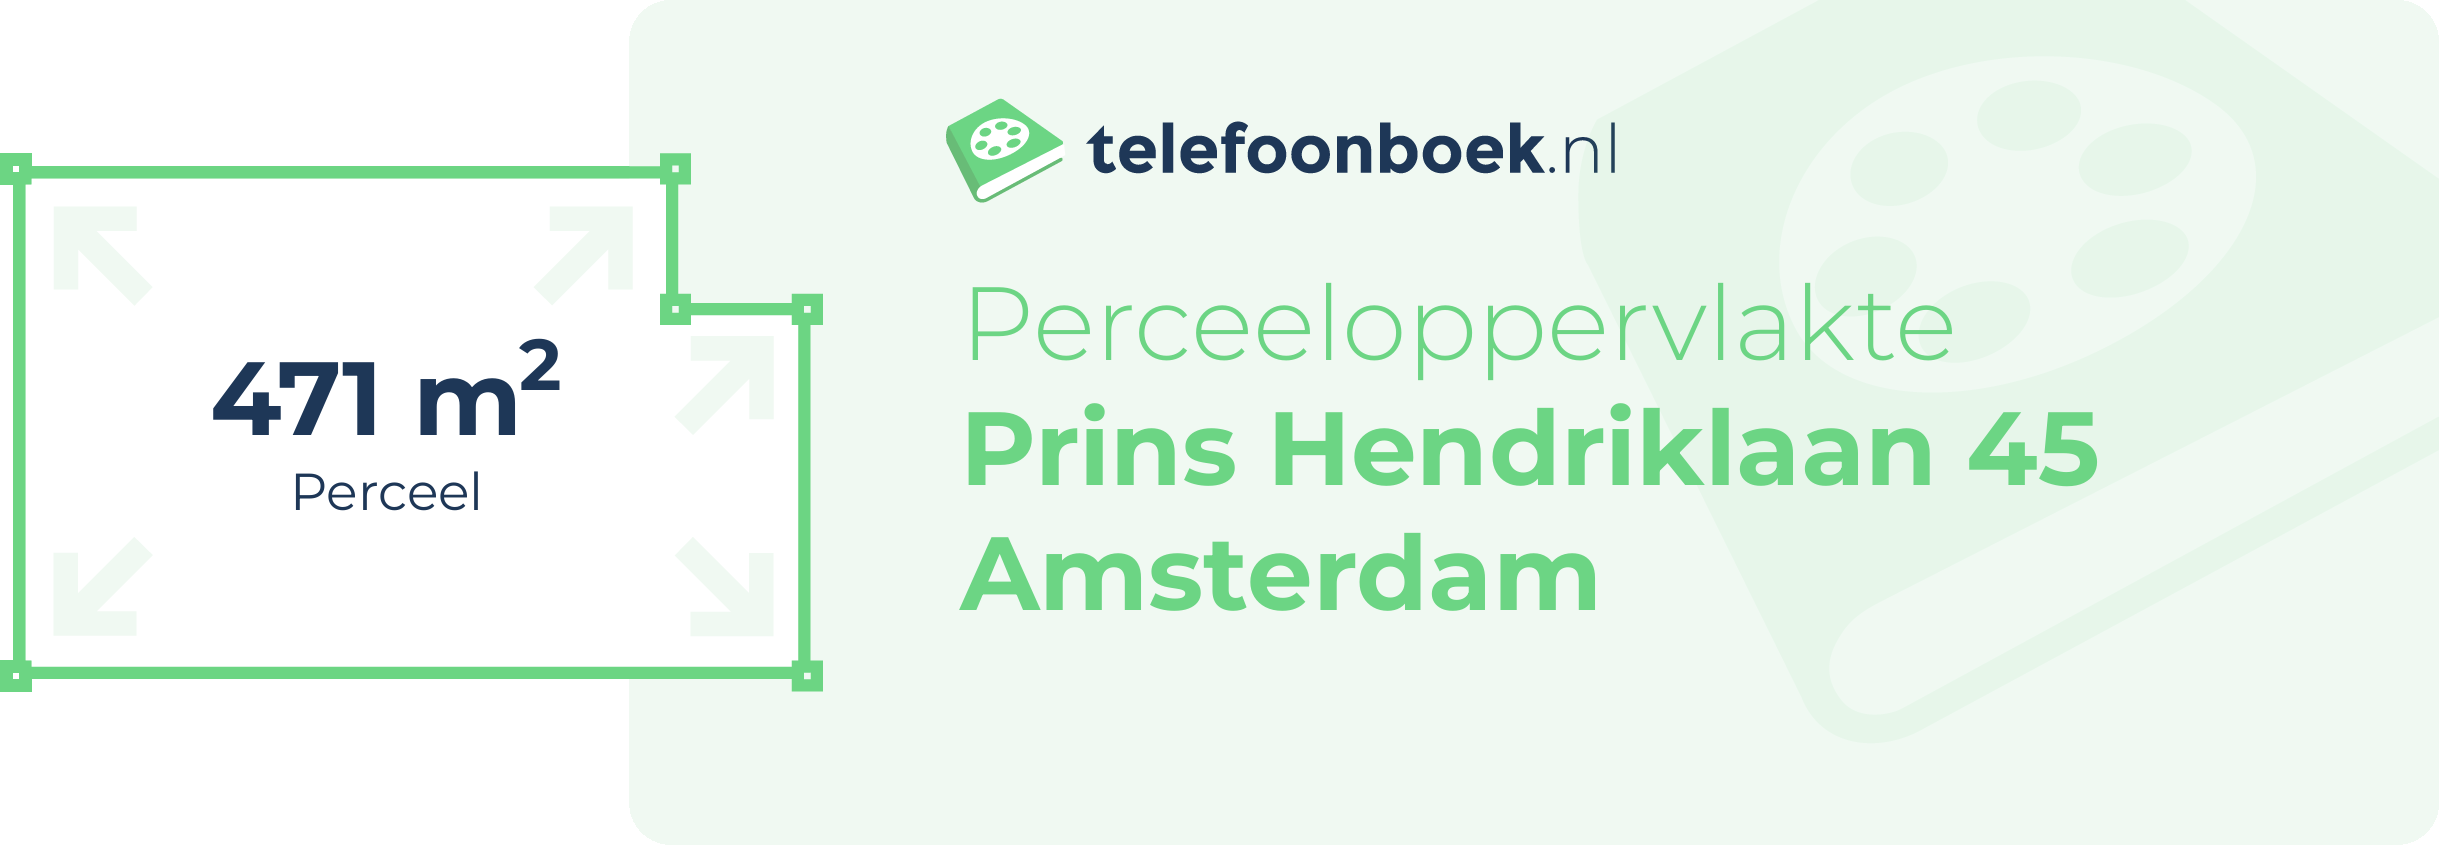 Perceeloppervlakte Prins Hendriklaan 45 Amsterdam